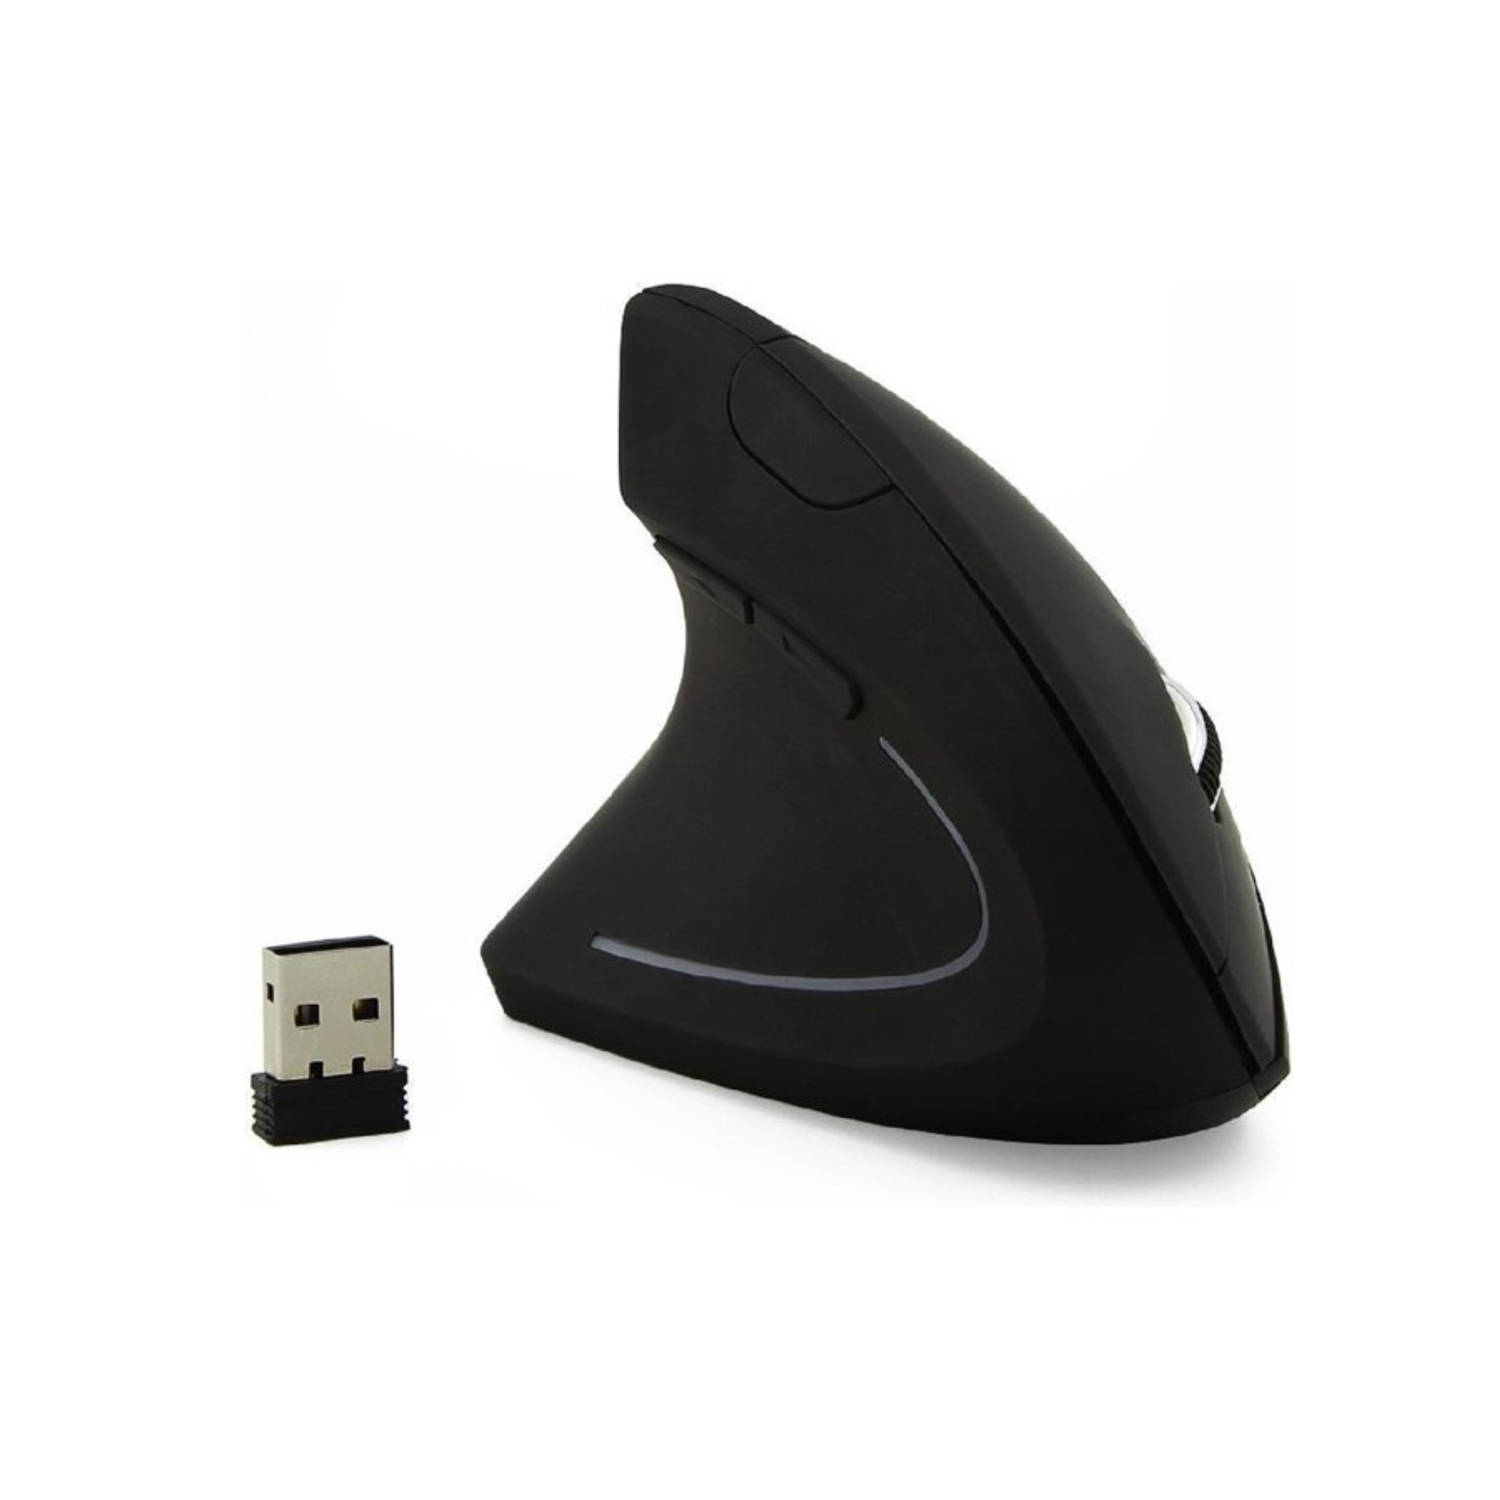 iBello ergonomische muis draadloos linkshandig